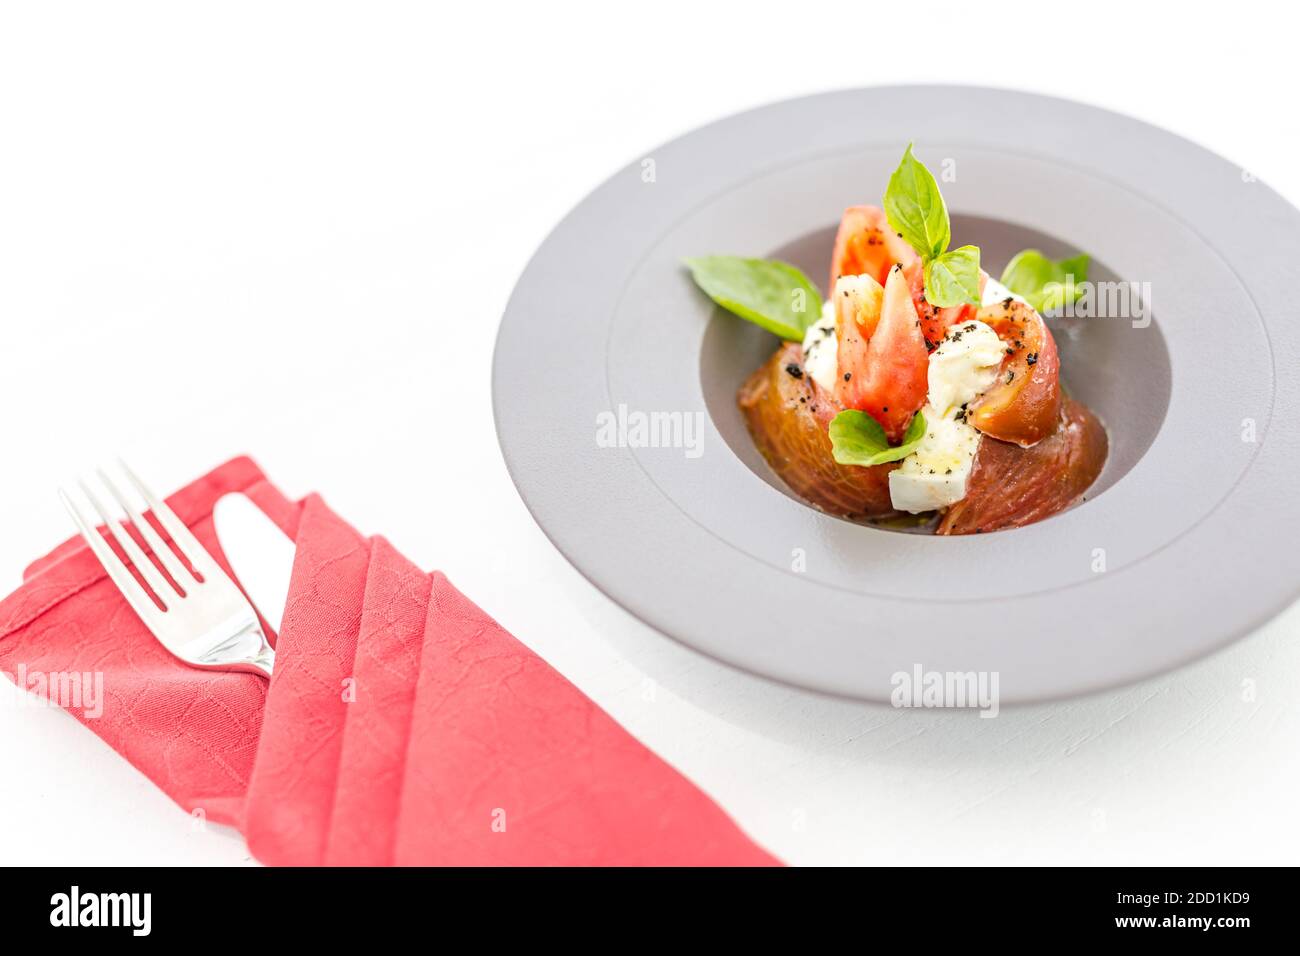 Insalata Caprese. Italienischer Salat aus Tomaten, Zucchini und Büffelmozzarella. Luxus Gourmet-Essen, Frühstück am Morgen, elegante Tischset Stockfoto